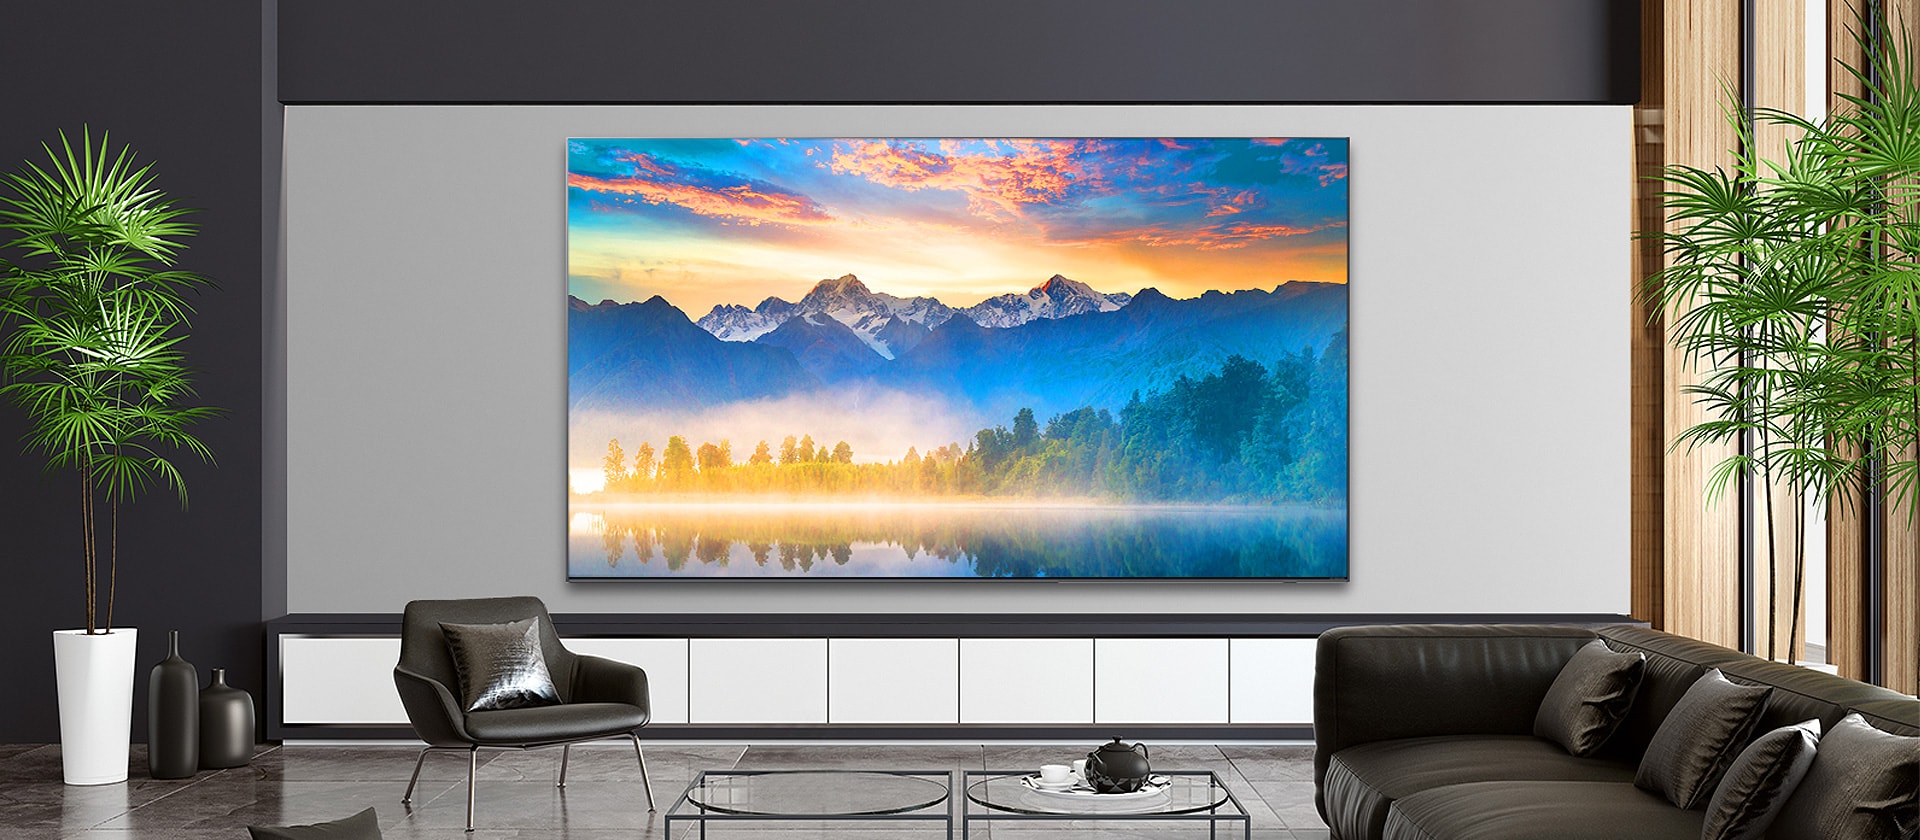 Nappali falra szerelt TV-képernyővel, melyen egy természeti kép látható.